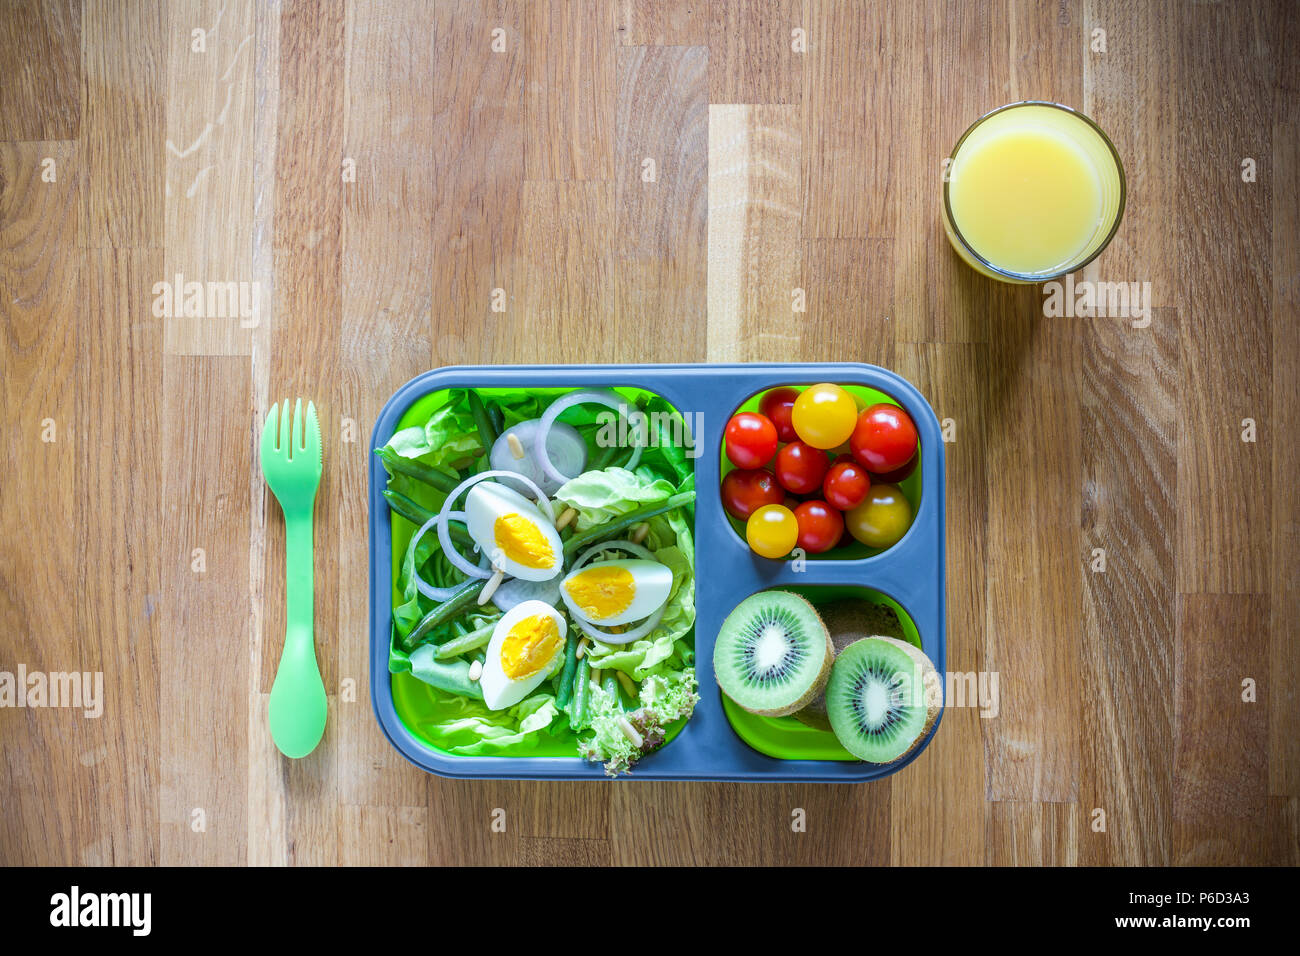 Silicone pliable boîte à lunch avec des aliments (salades, œufs, kiwi) sur table en bois et le jus d'orange Banque D'Images